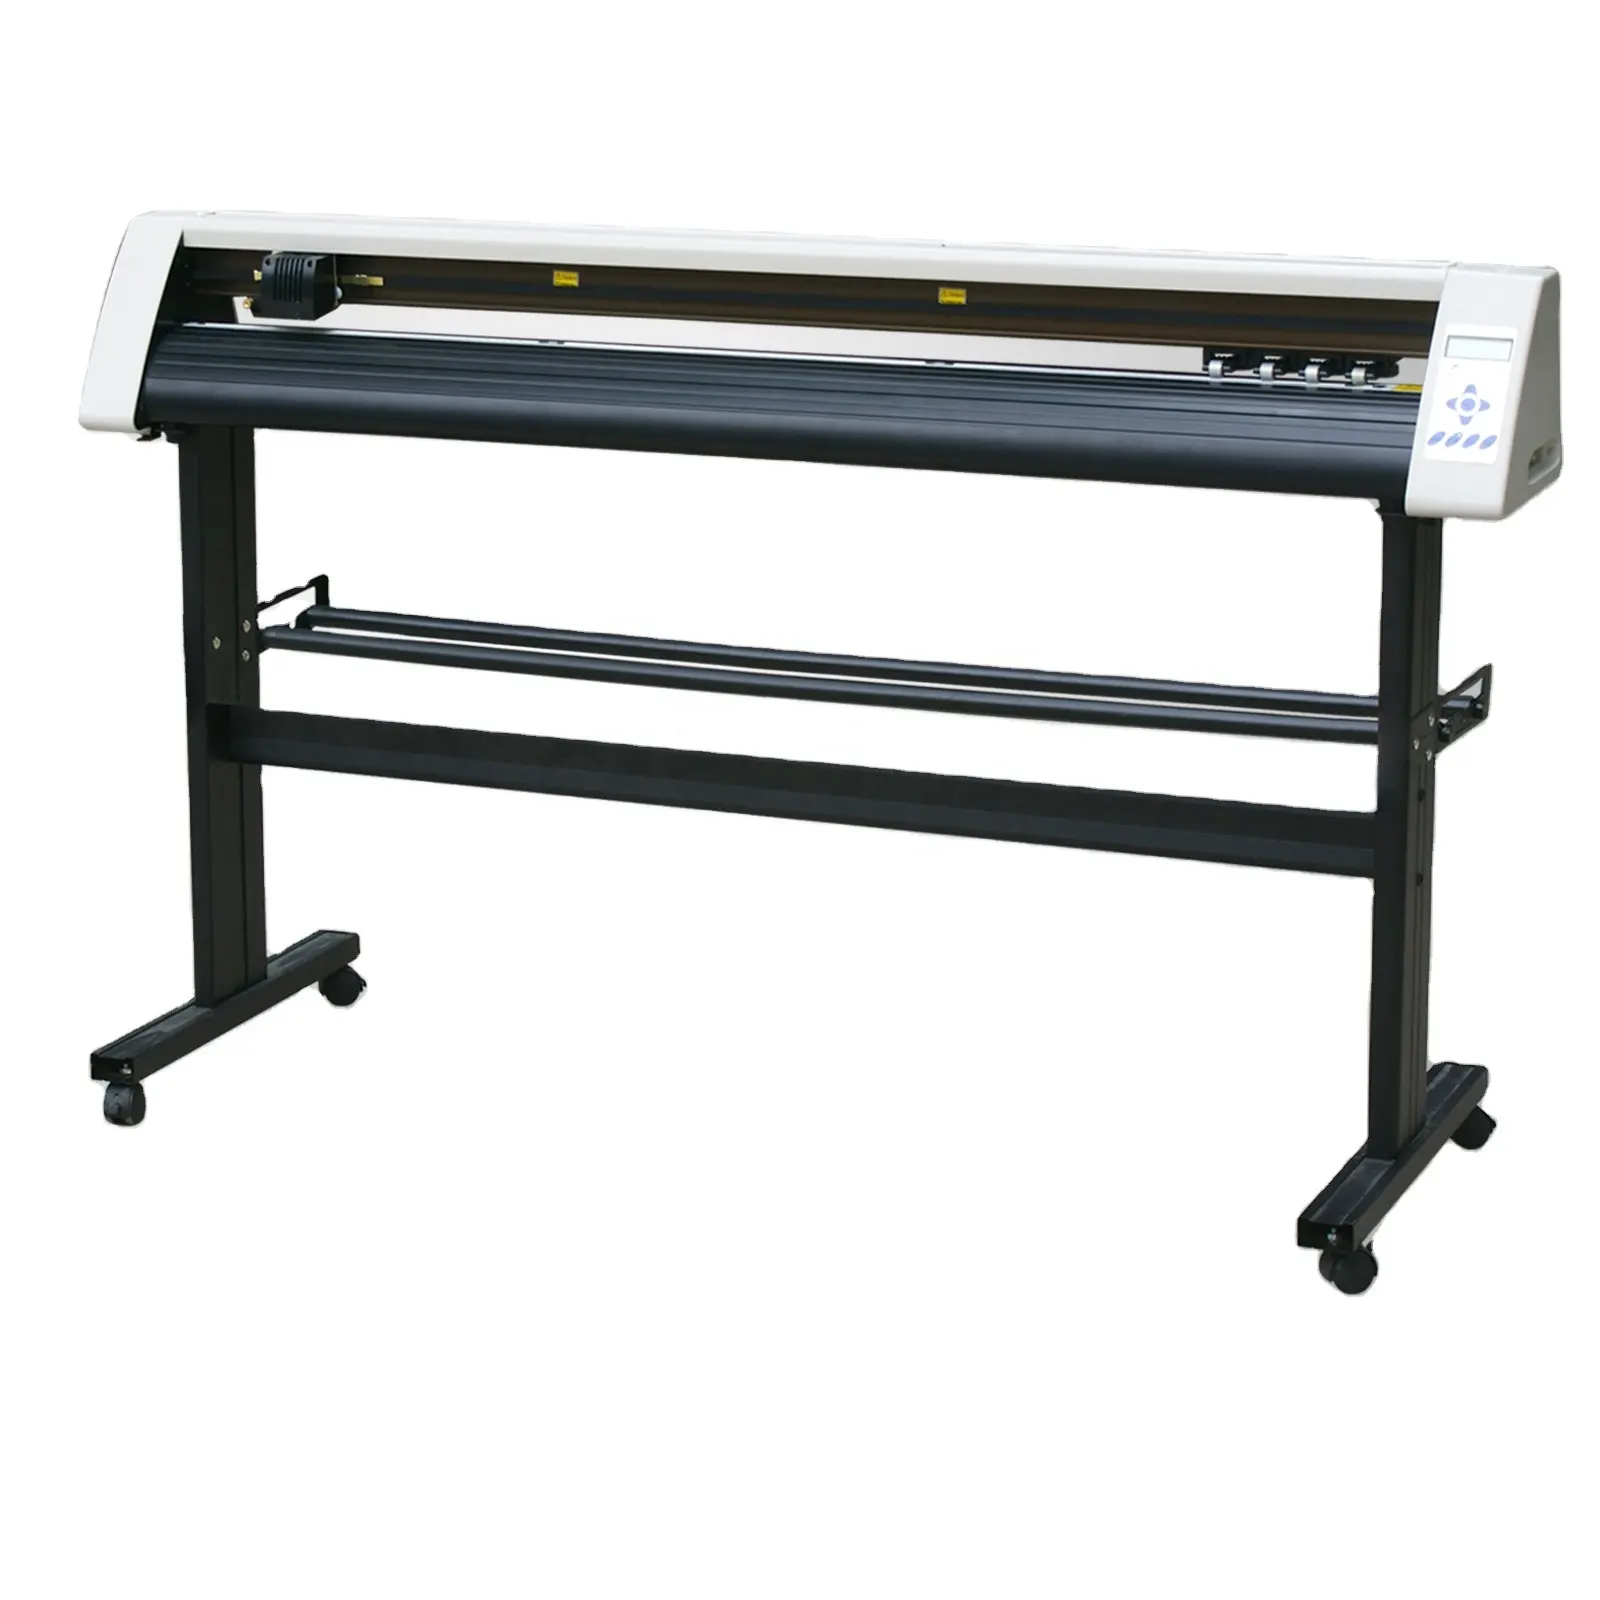 Широкоформатный плоттер Redsail RS1600C используется для образования. Для печати на одежде и других промышленных целей.